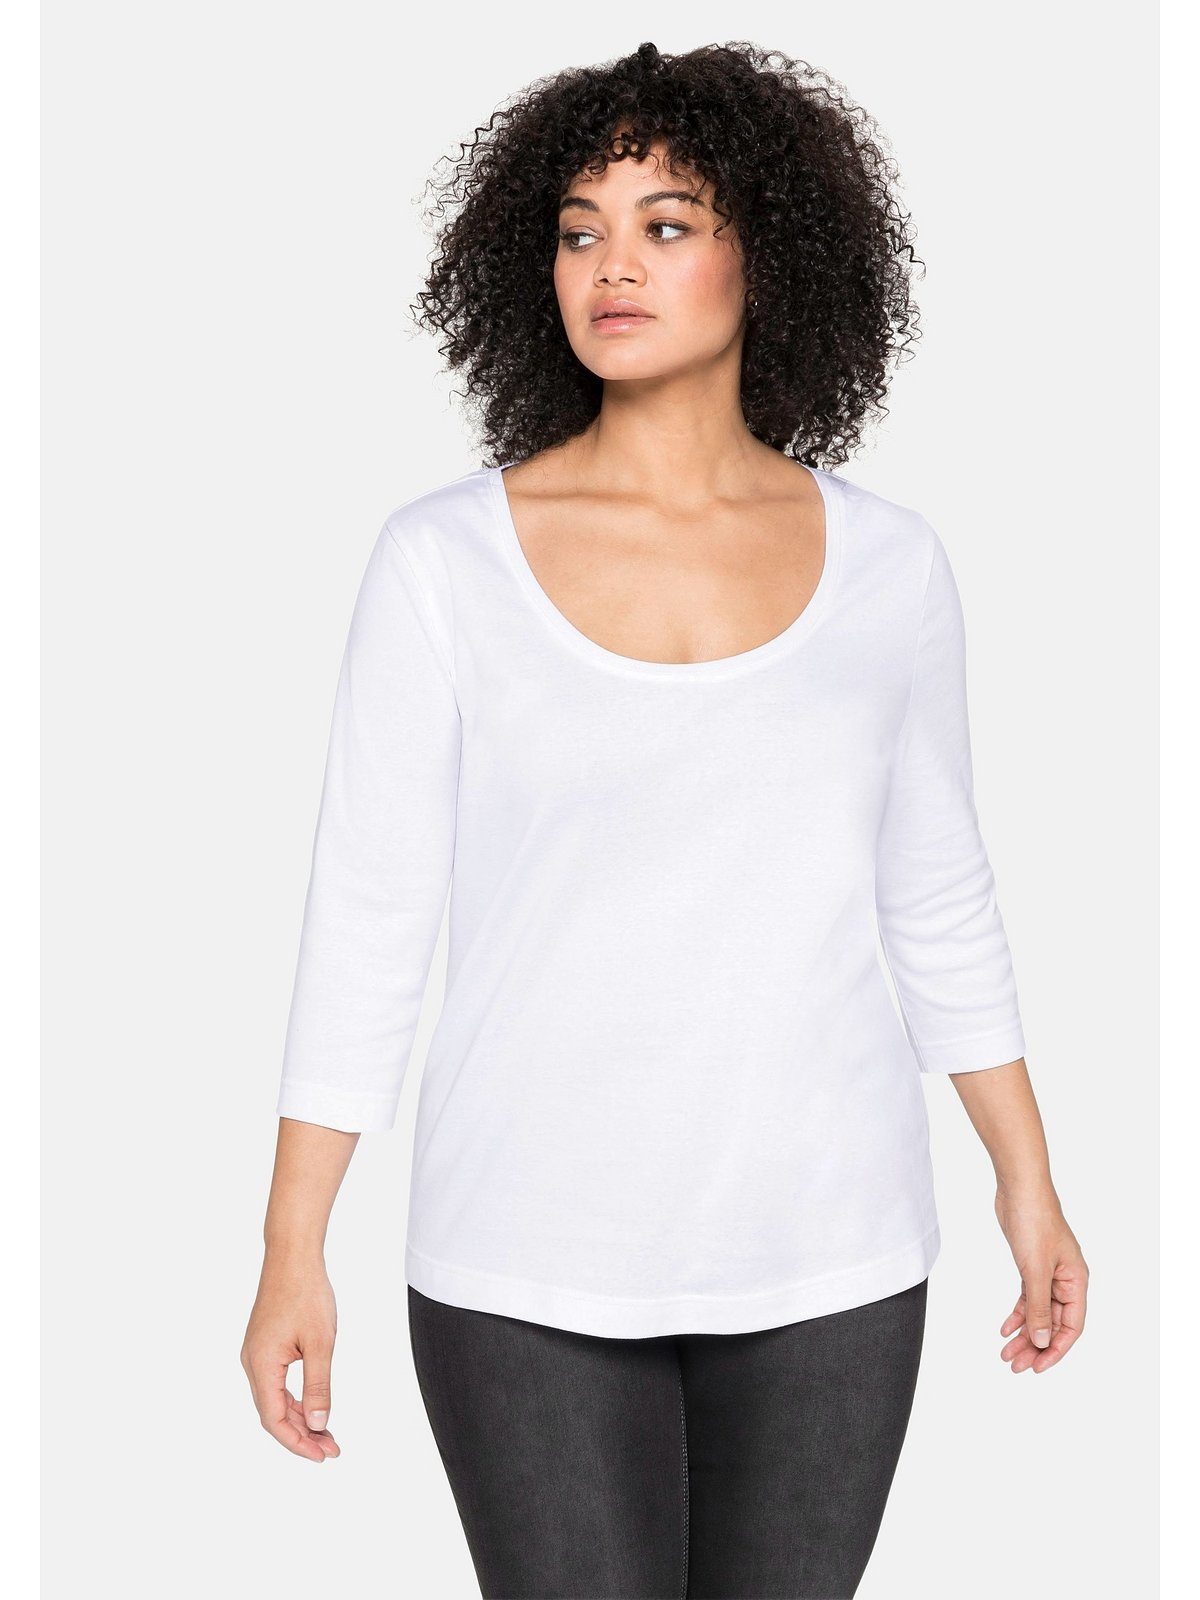 【berühmt】 Sheego 3/4-Arm-Shirt Große Größen weiß reiner Baumwolle aus